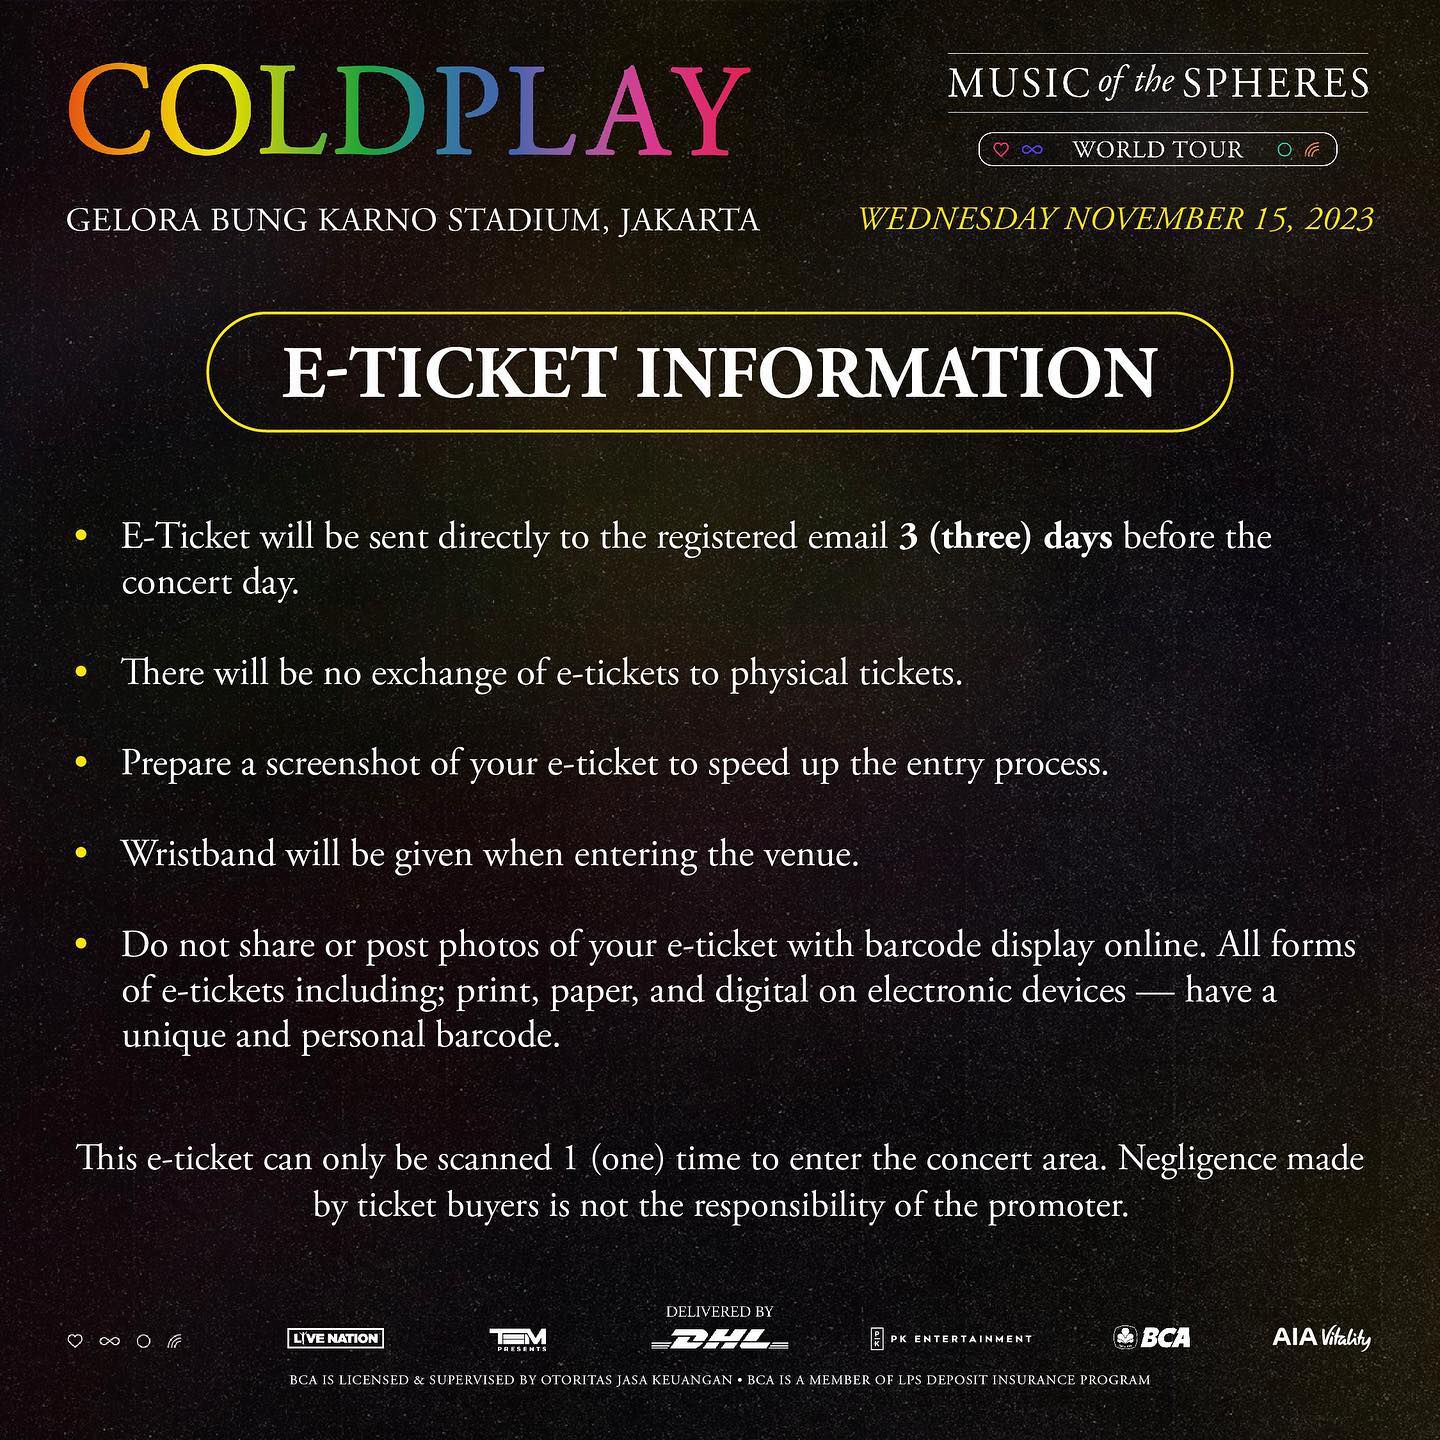 Cara Menukar Tiket Coldplay Jakarta